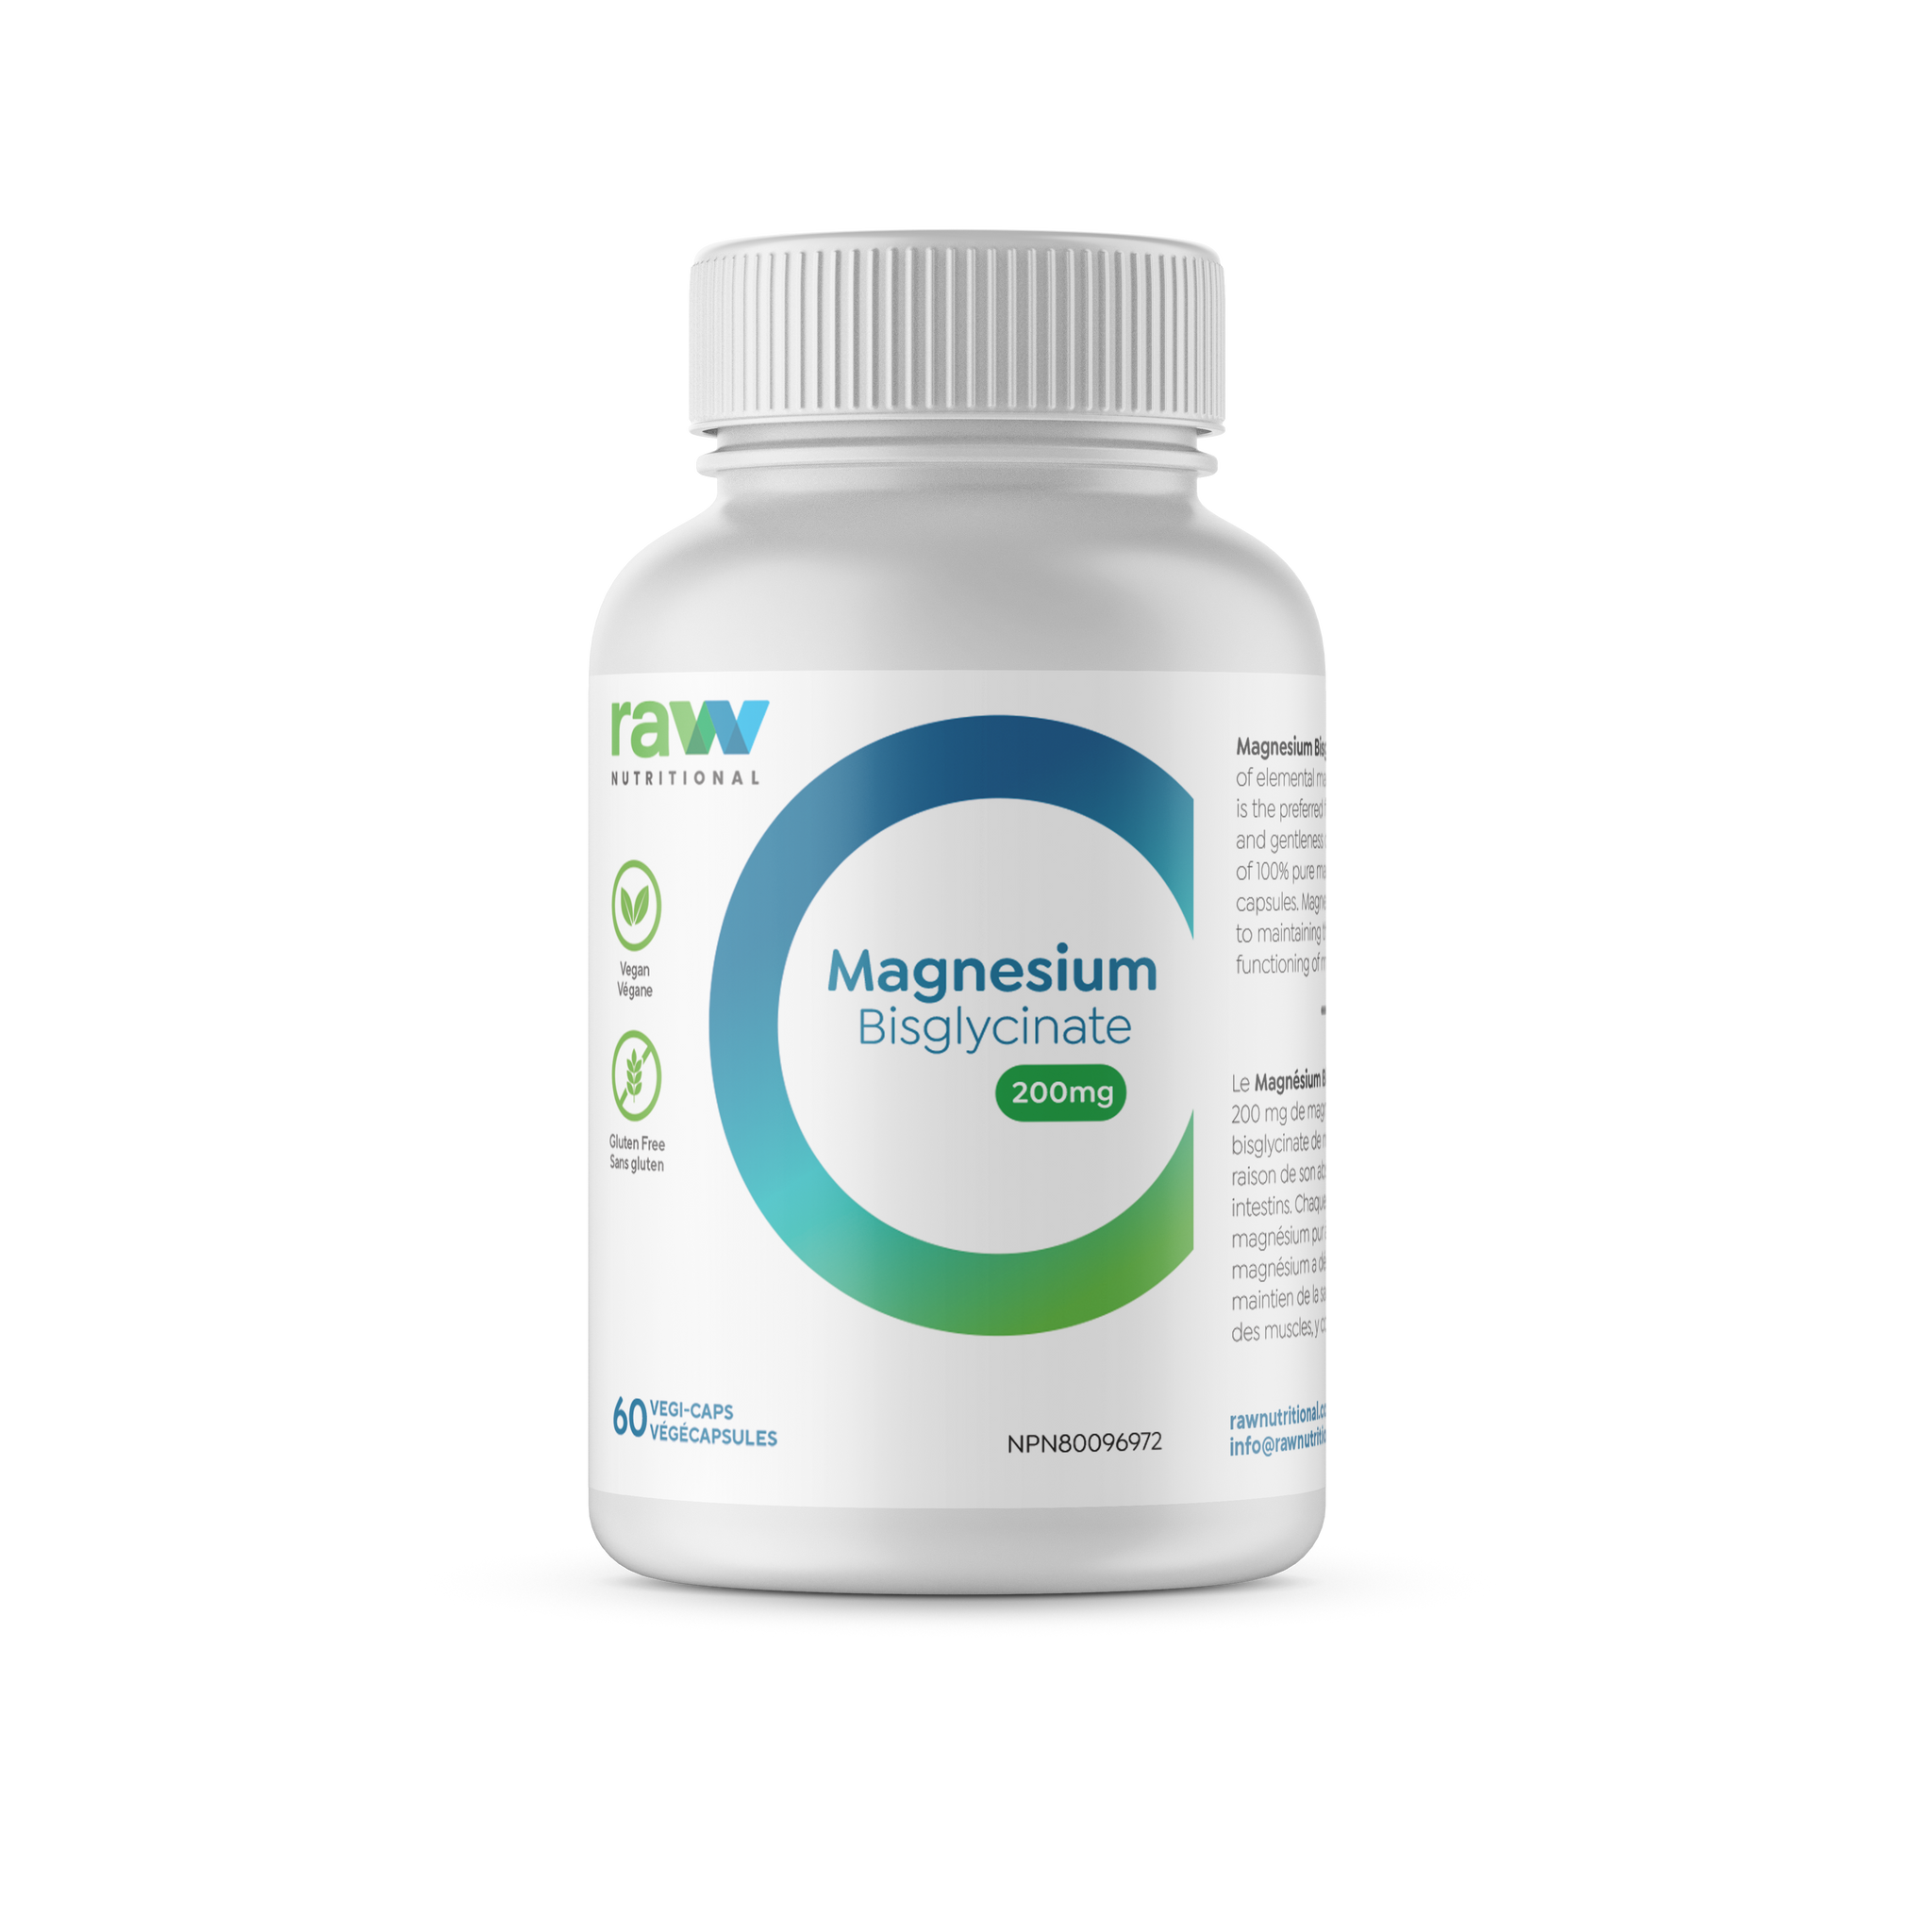 Magnesium Bisglycinate||Magnésium Bisglycinate